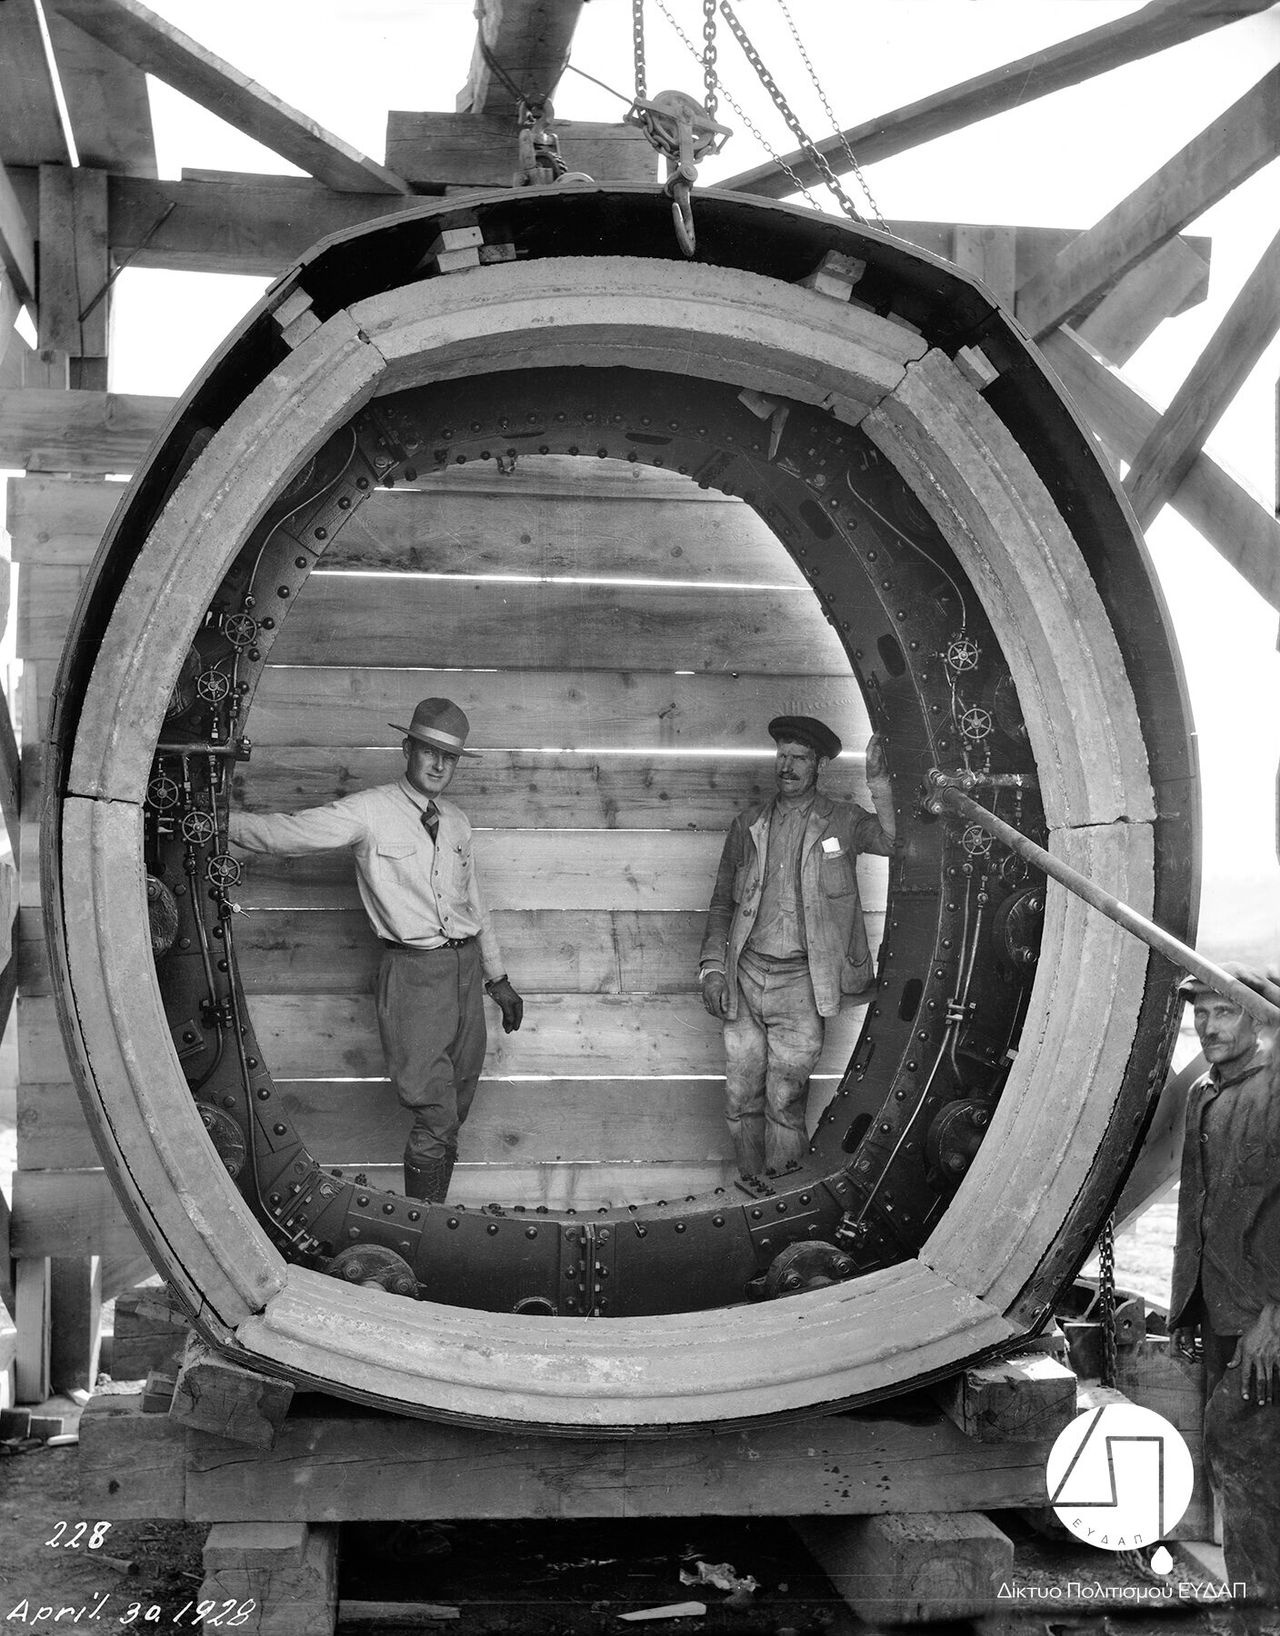 Μηχανικός και εργάτης του έργου φωτογραφίζονται στο μεγάλο μεταλλικό δακτύλιο που χρησιμοποιήθηκε για την κατασκευή της Σήραγγας του Μπογιατίου, 1928